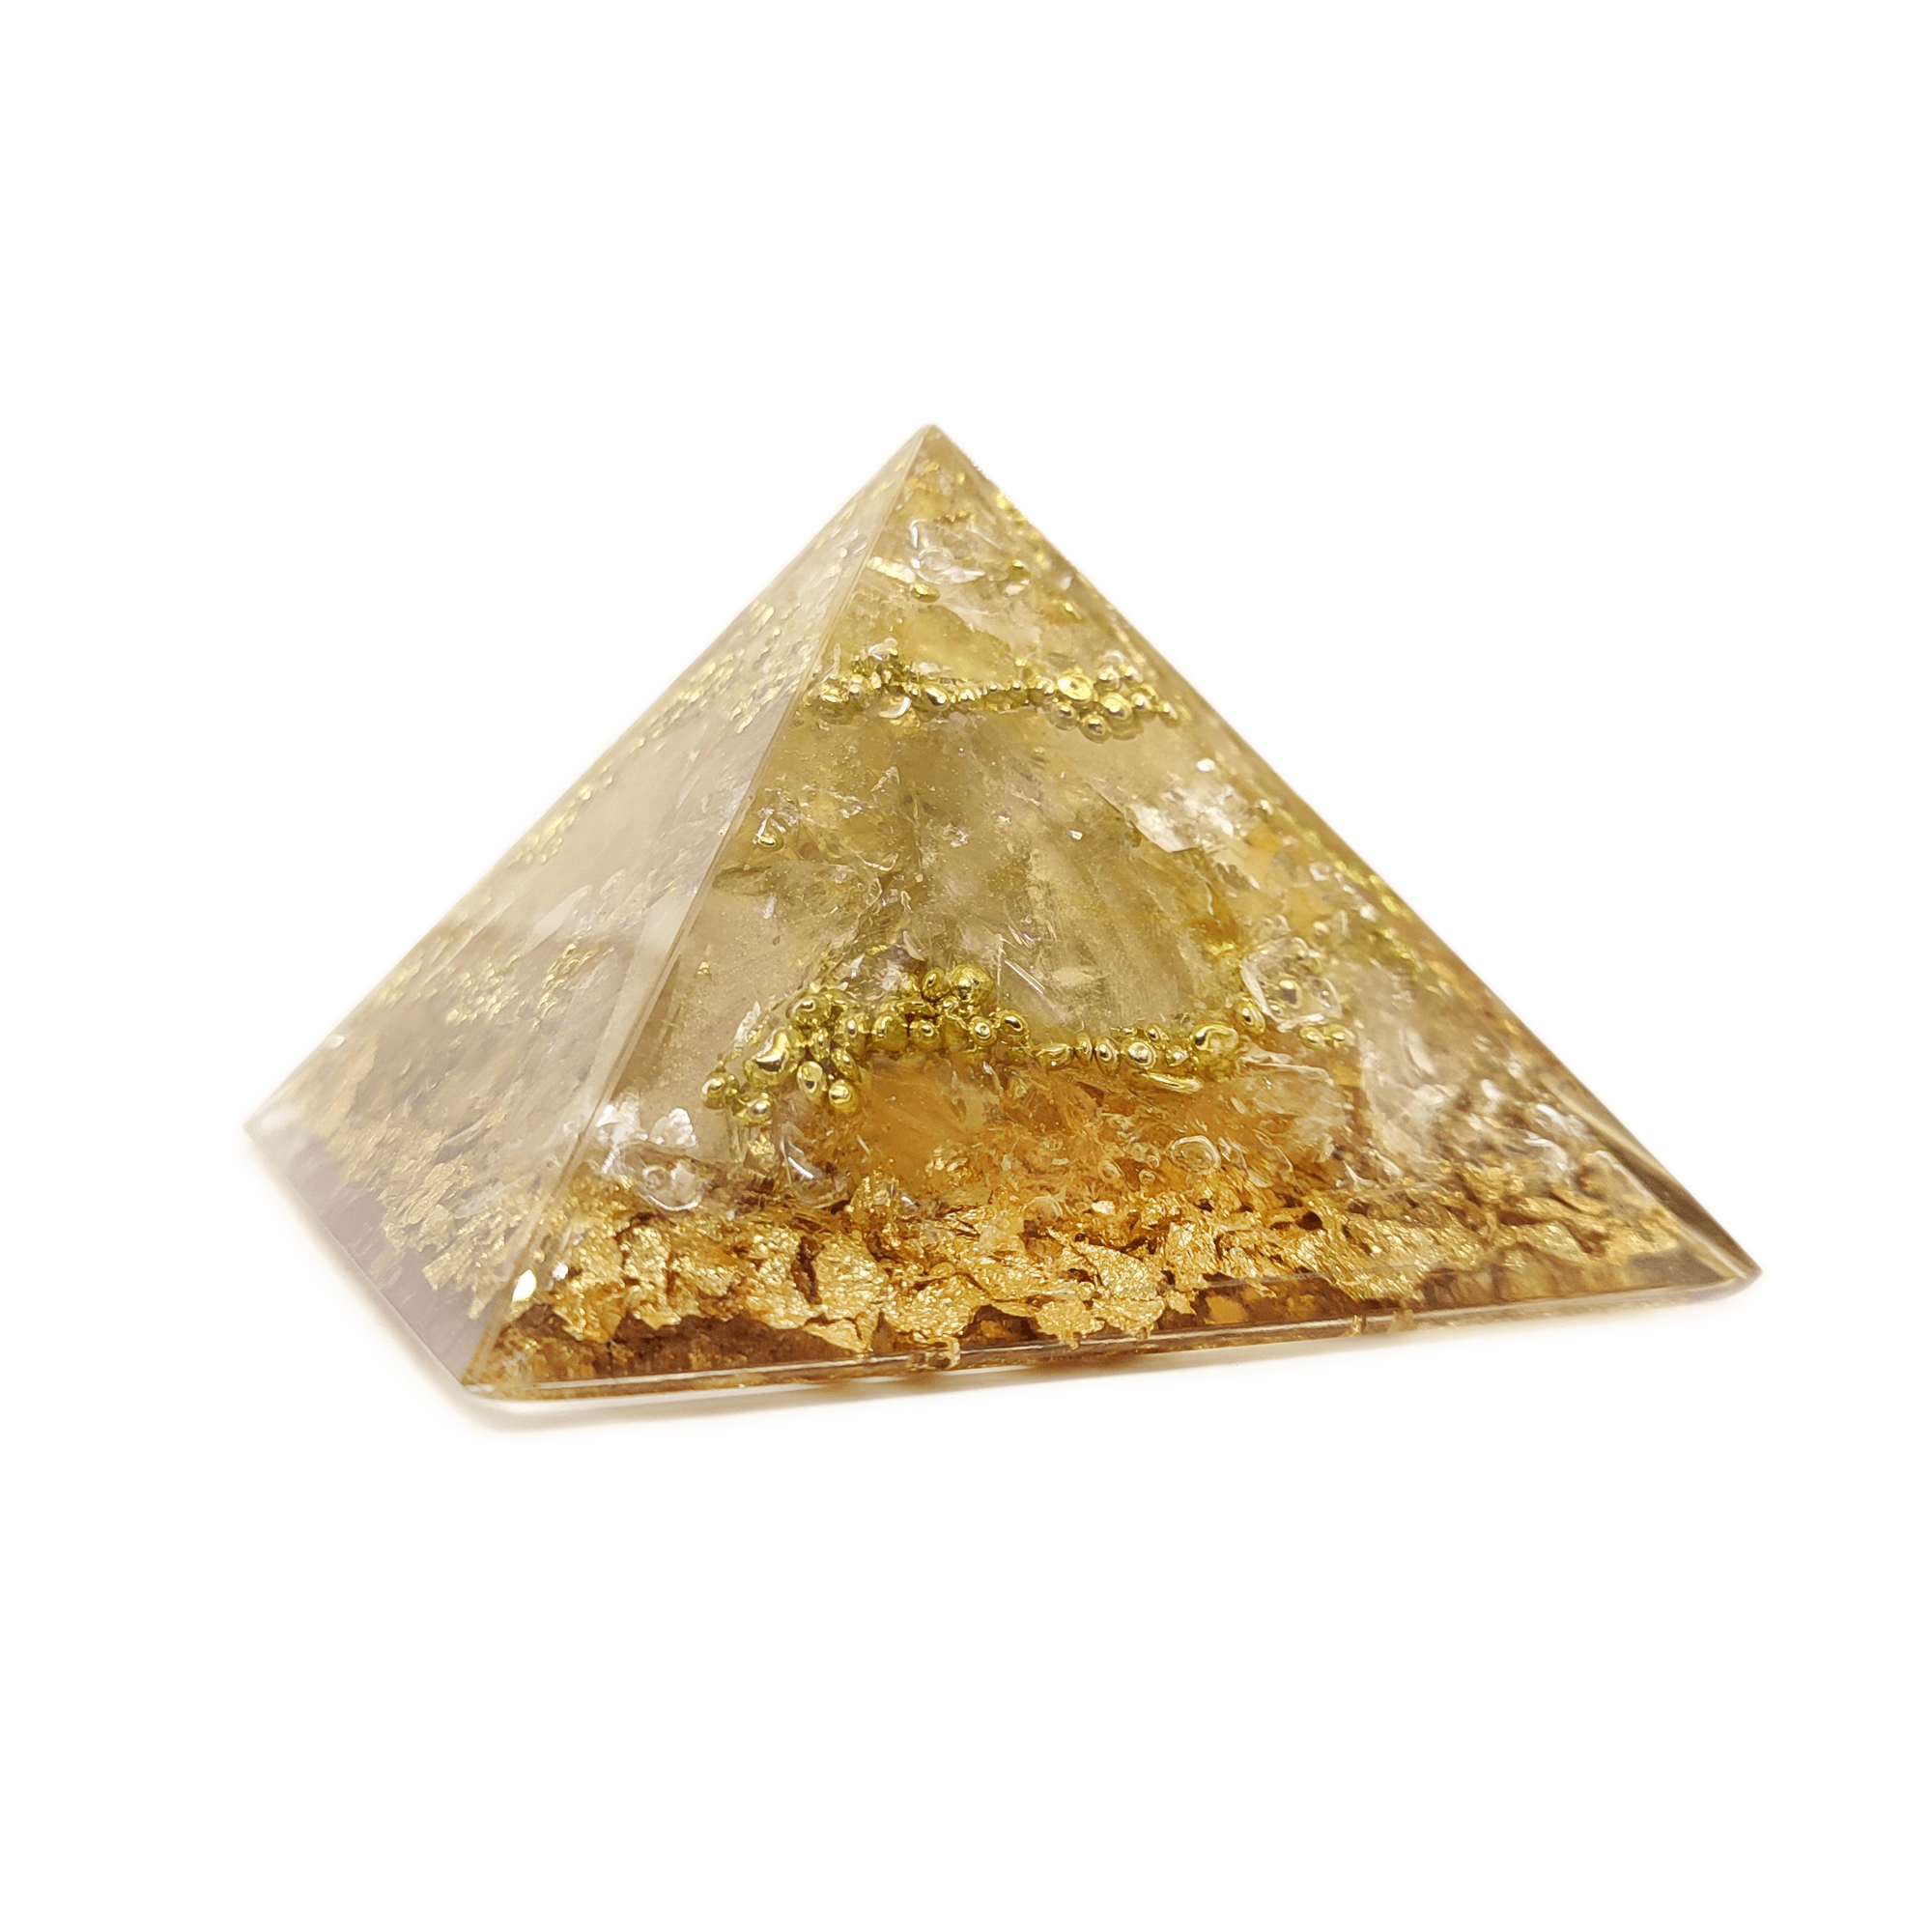 Aus Quarzen & hellen Edelsteinen gefertigte Orgon Pyramide. Dieser Orgonit ist beige bis gelb & es sind goldene Metallelemente zu erkennen.